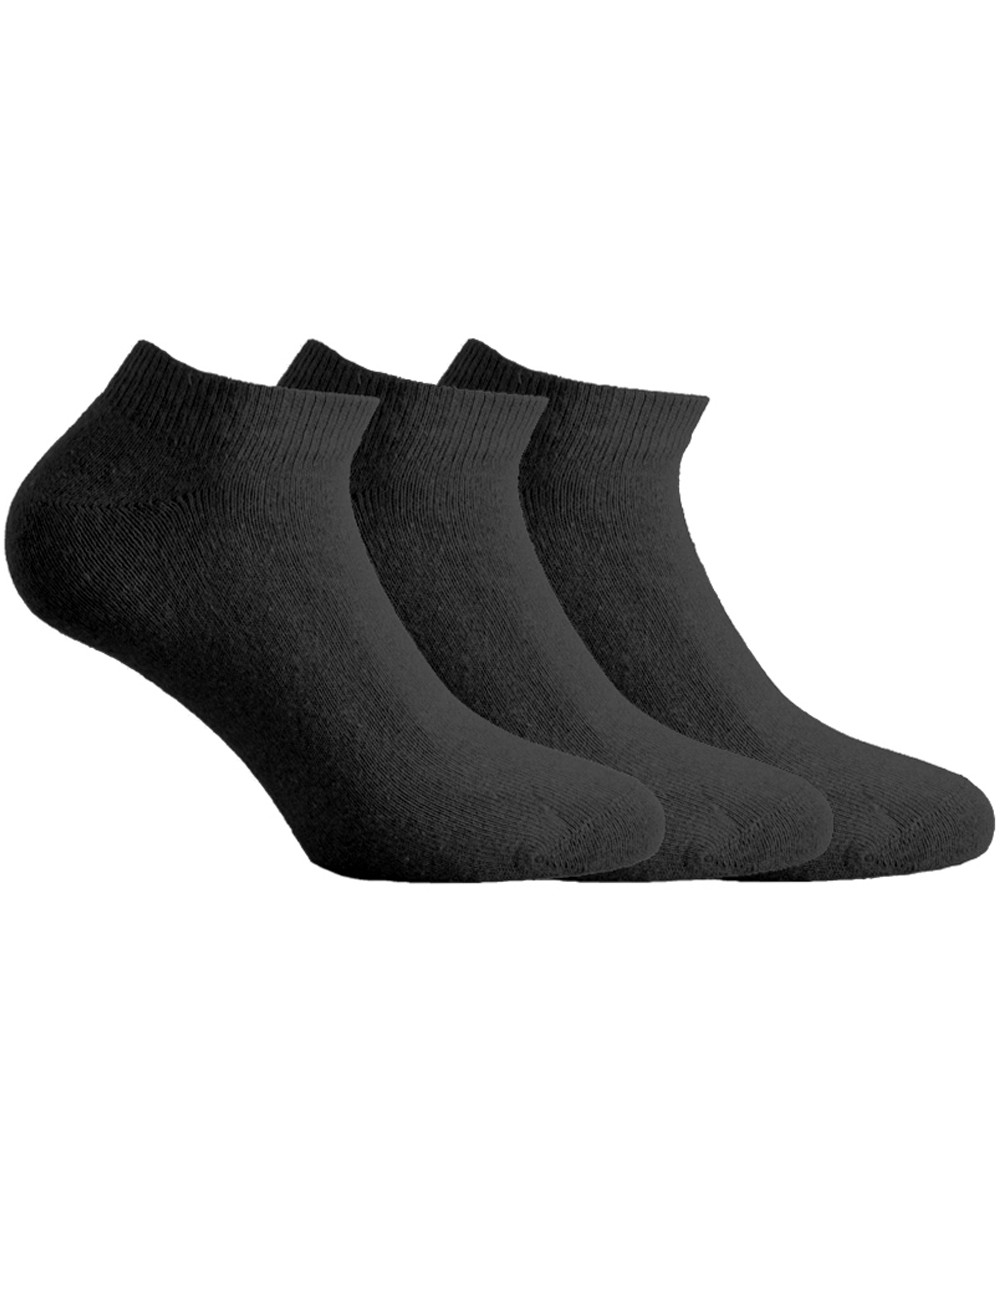 Γυναικείες Βαμβακερές Κάλτσες Κοφτές Walk Σετ 3 Ζεύγη V50